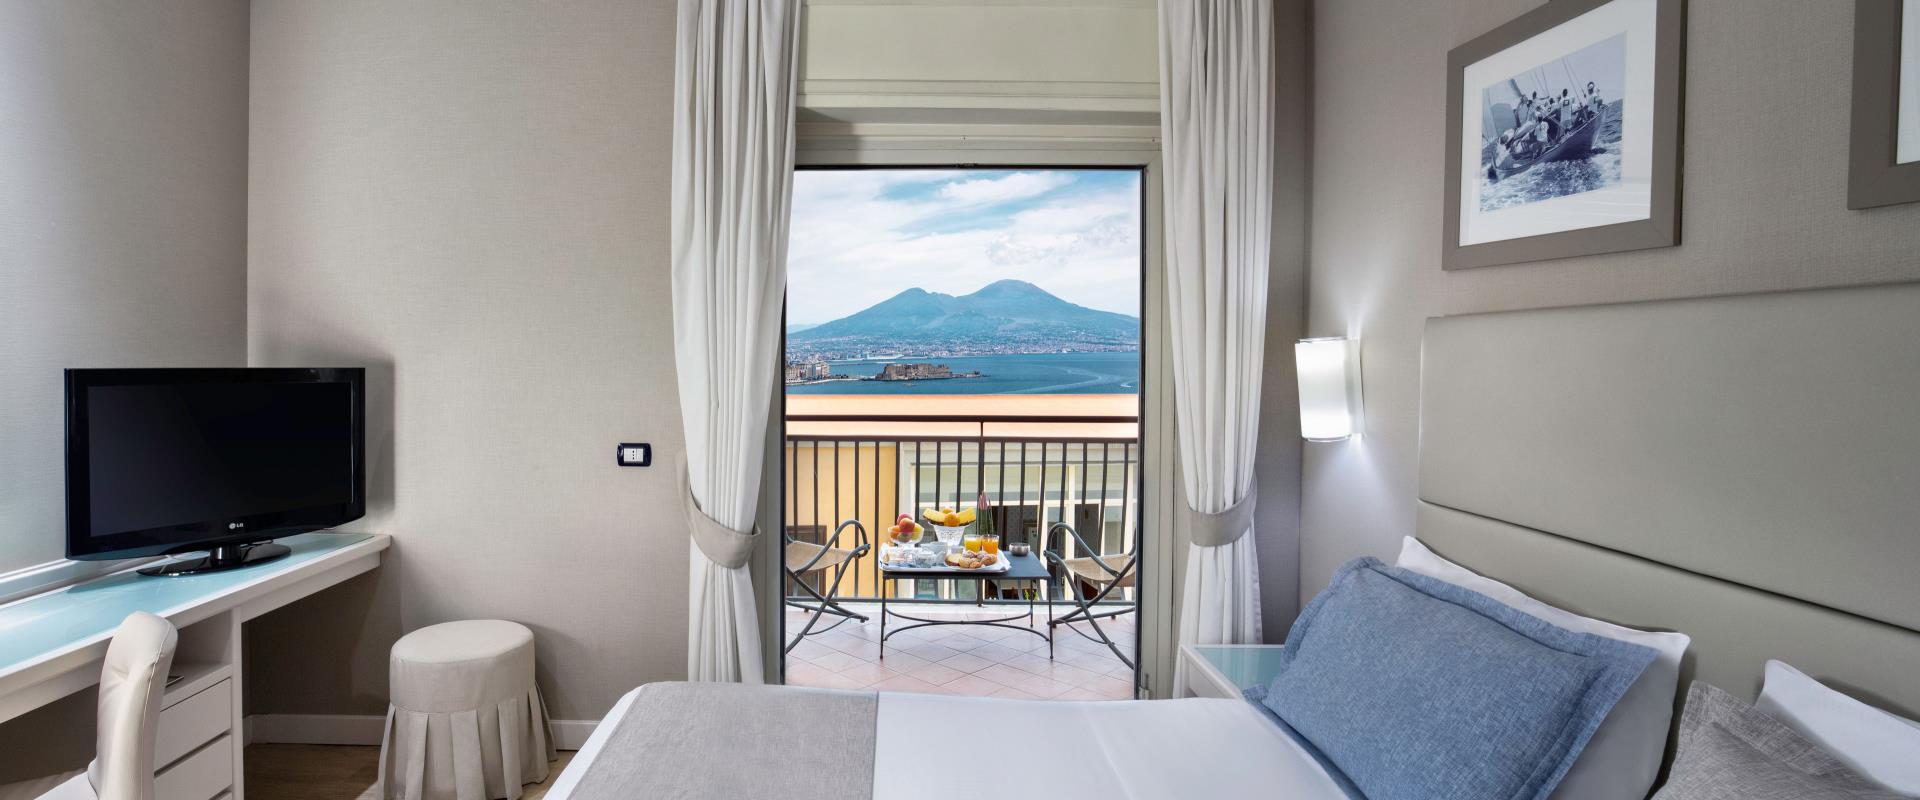 Откройте для себя номера с частичным видом на море отеля Paradiso в Неаполе!